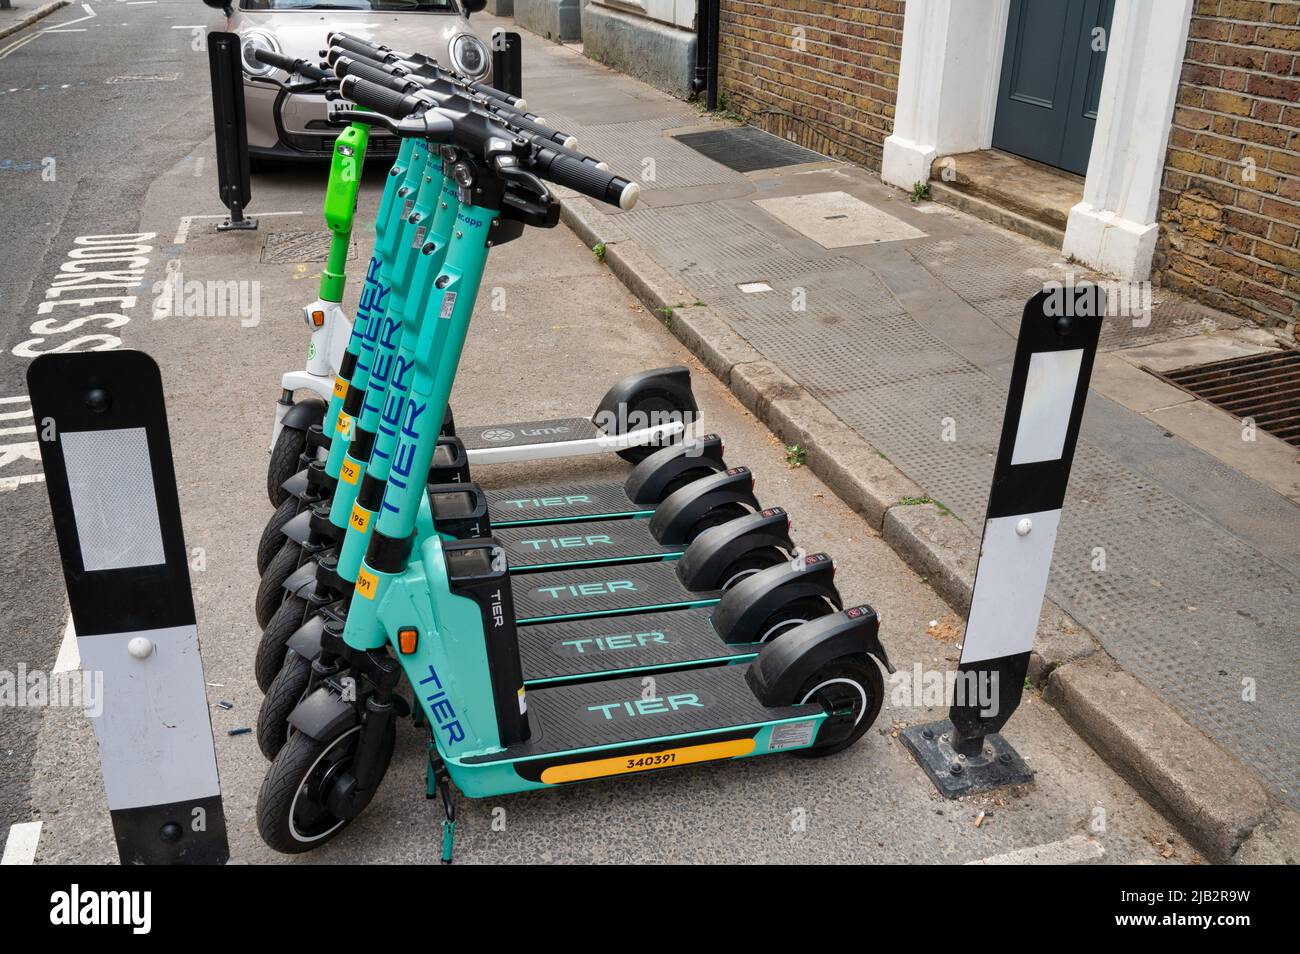 Londres, Reino Unido - 3 de mayo de 2022: Motos de nivel de alquiler alineados en una calle en Londres Foto de stock